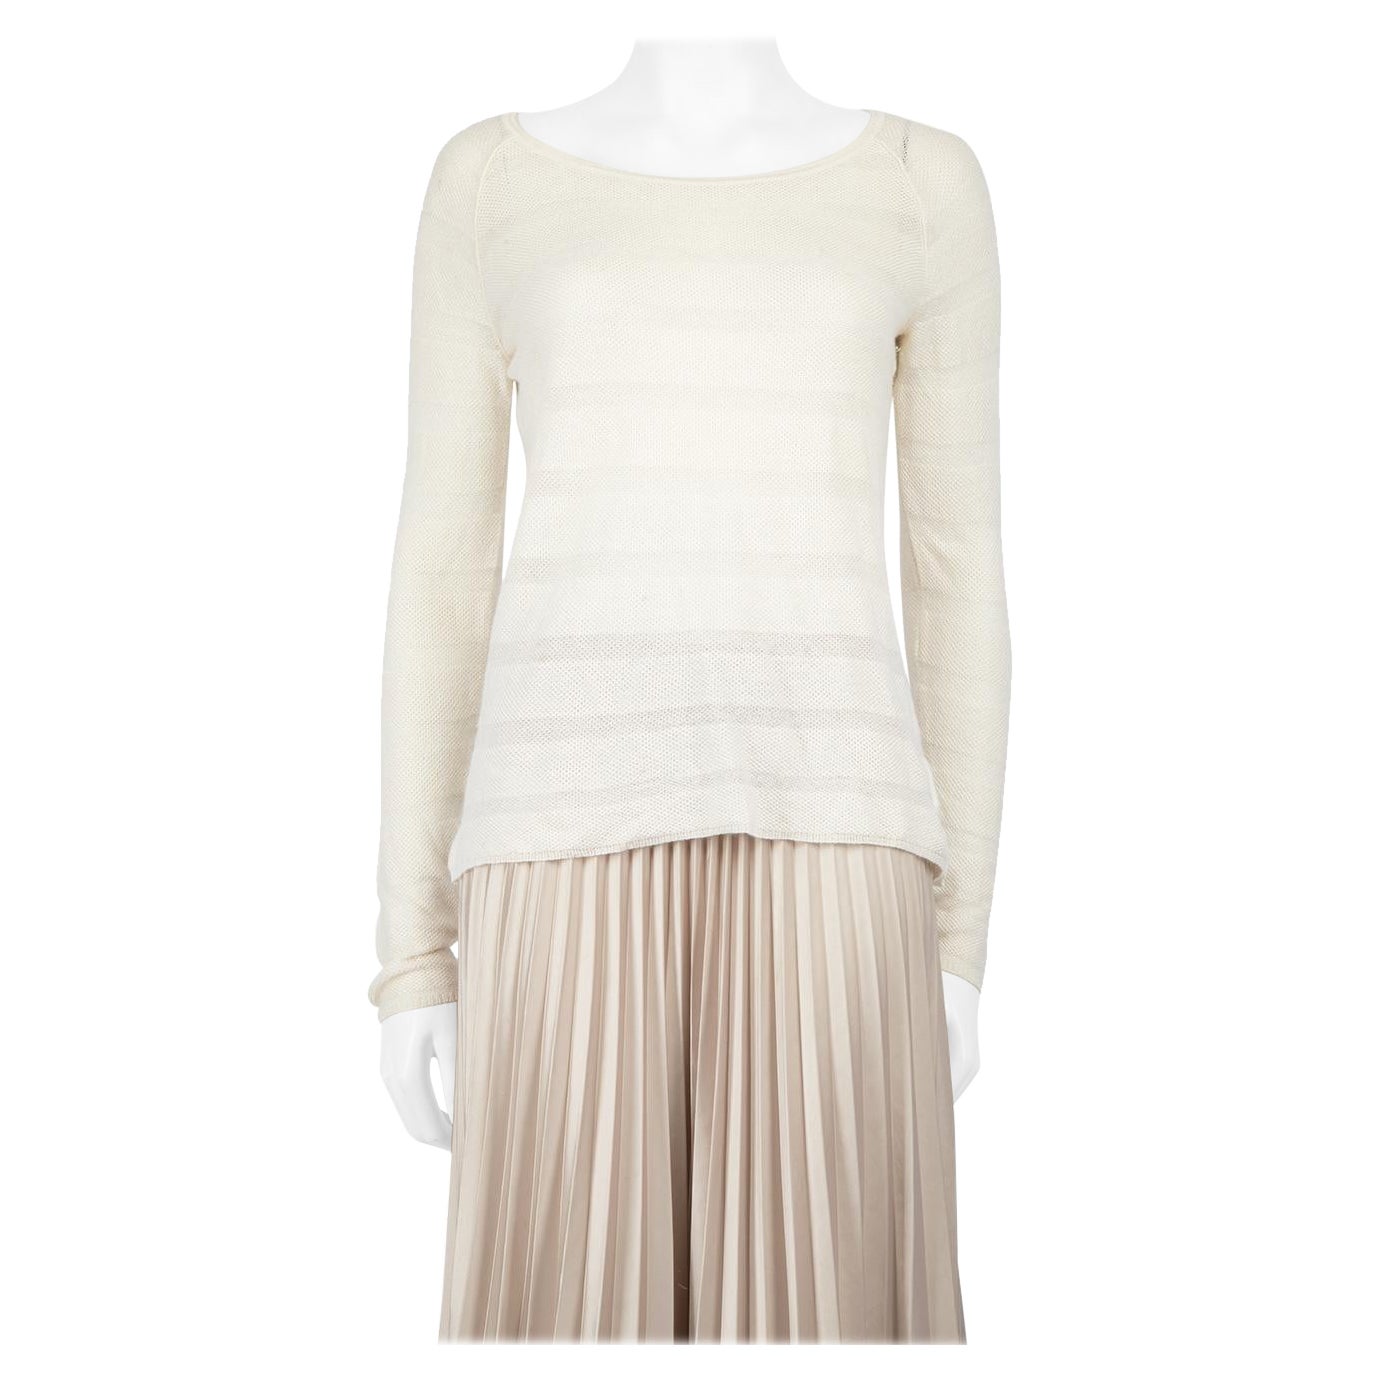 Loro Piana Cream Cashmere Striped Knit Top Size S For Sale